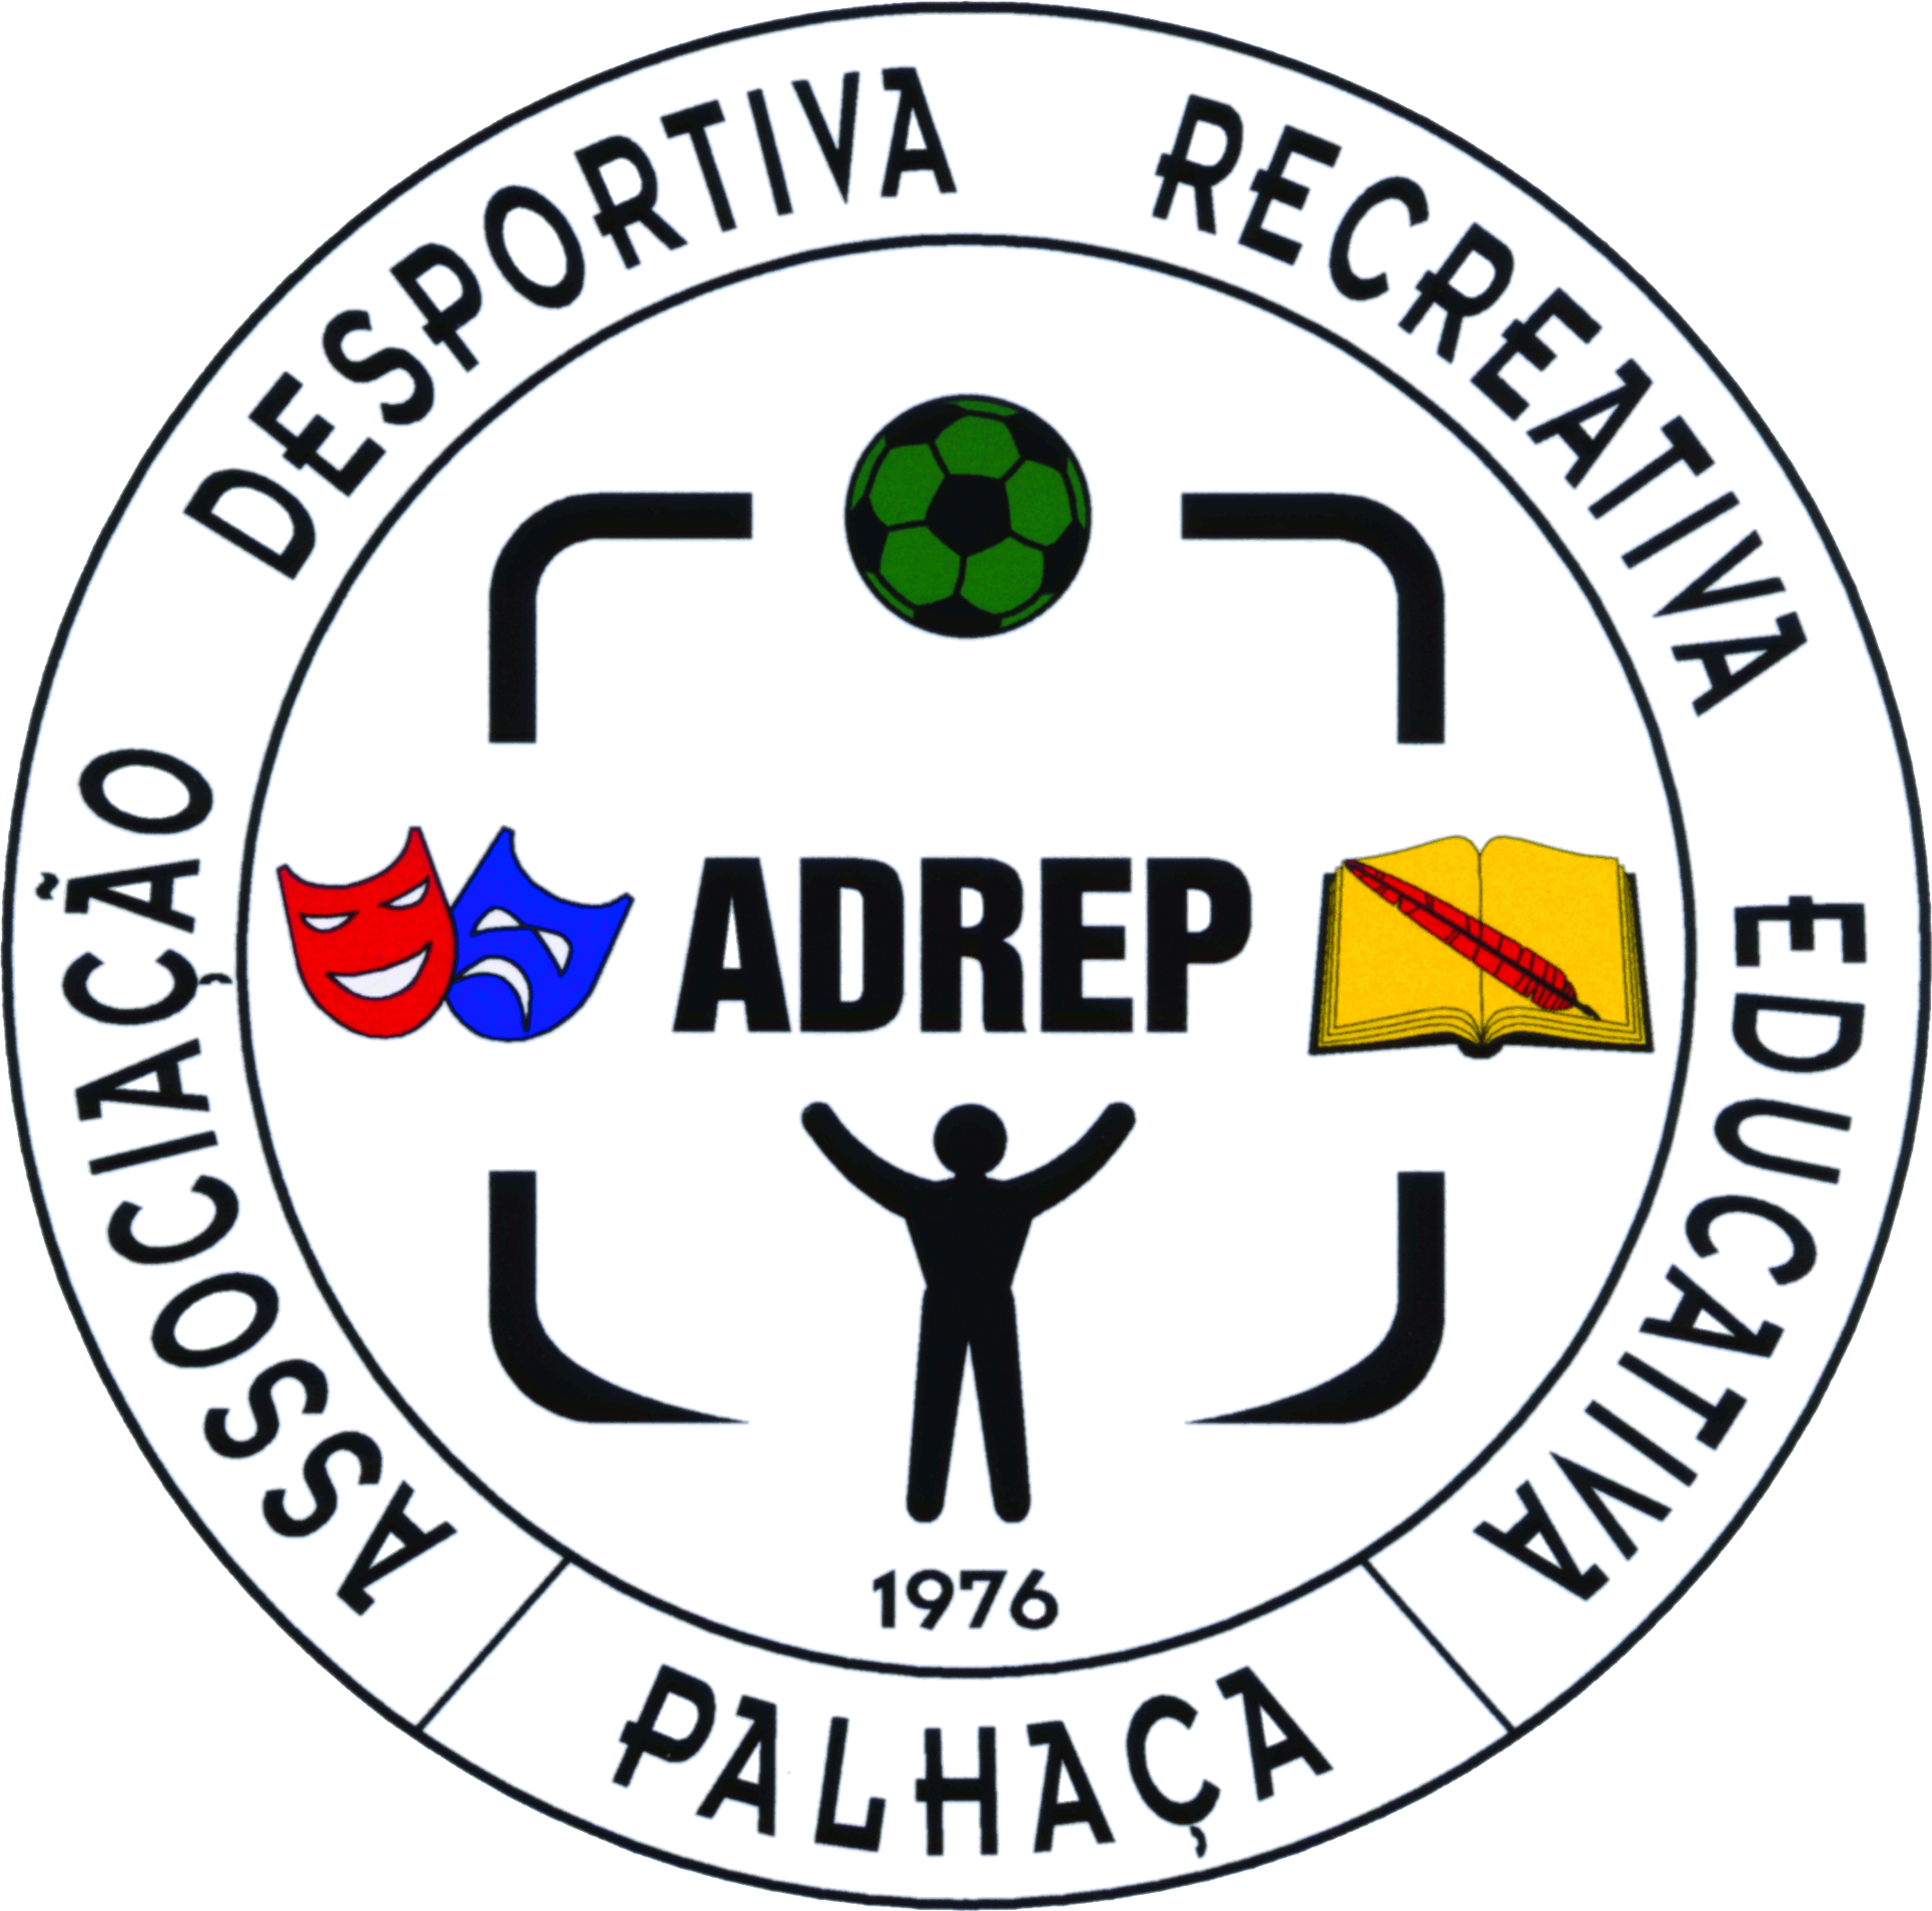 ADREP - Associação Desportiva, Recreativa e Educativa da Palhaça